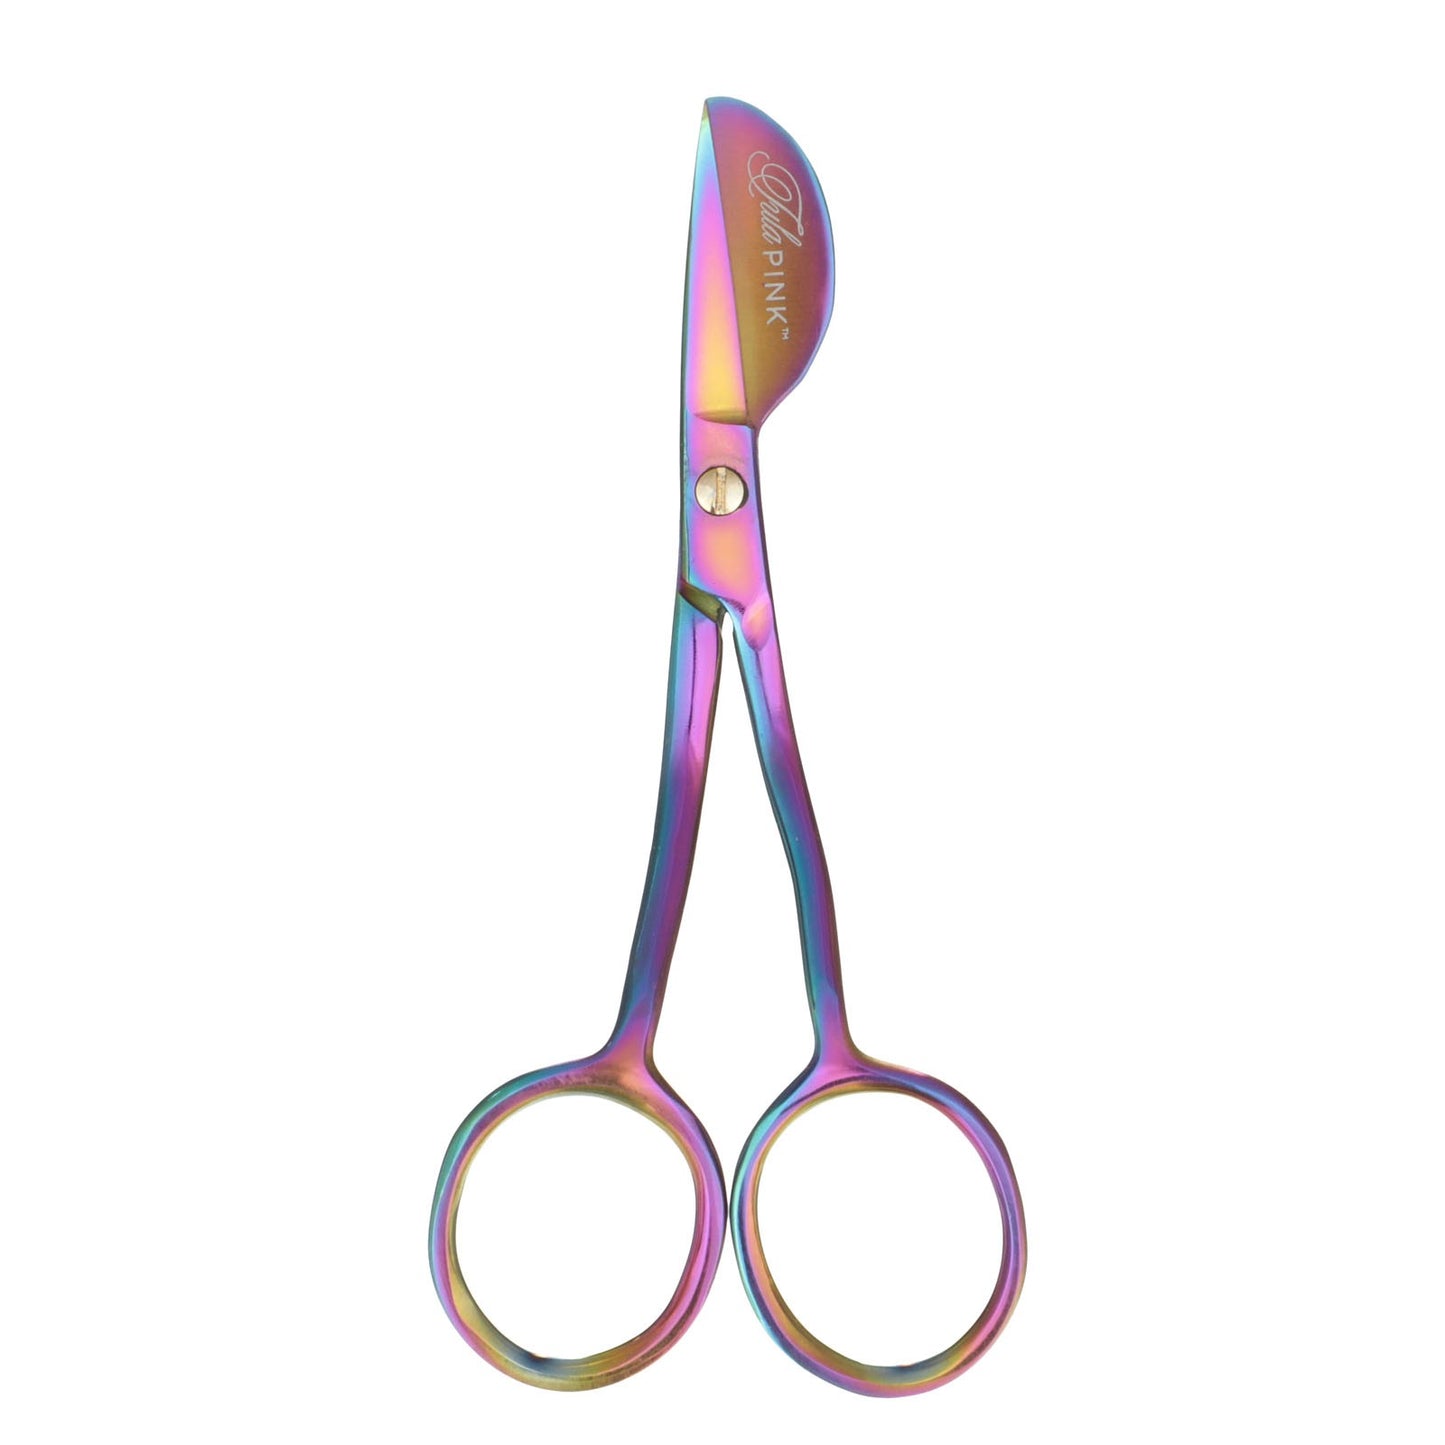 Tula Pink Mini Duckbill Scissors